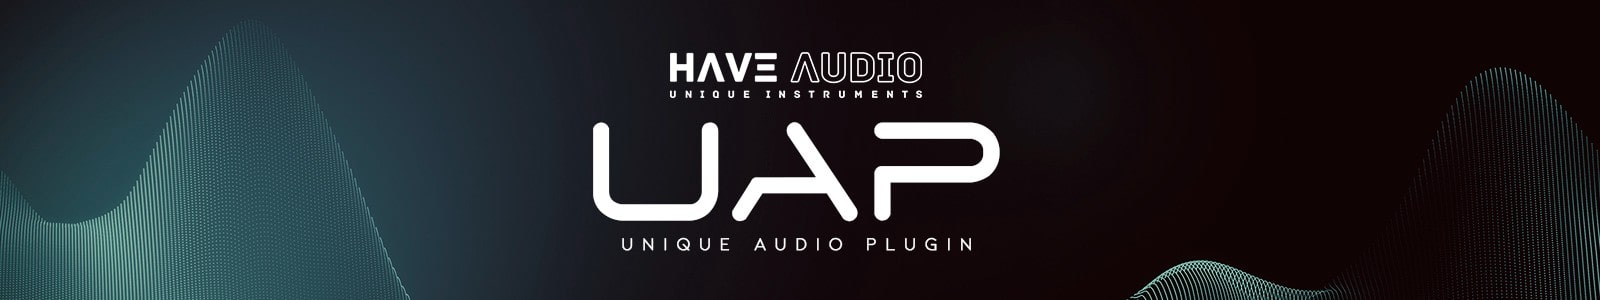 Unique Audio Plugin by Have Audio